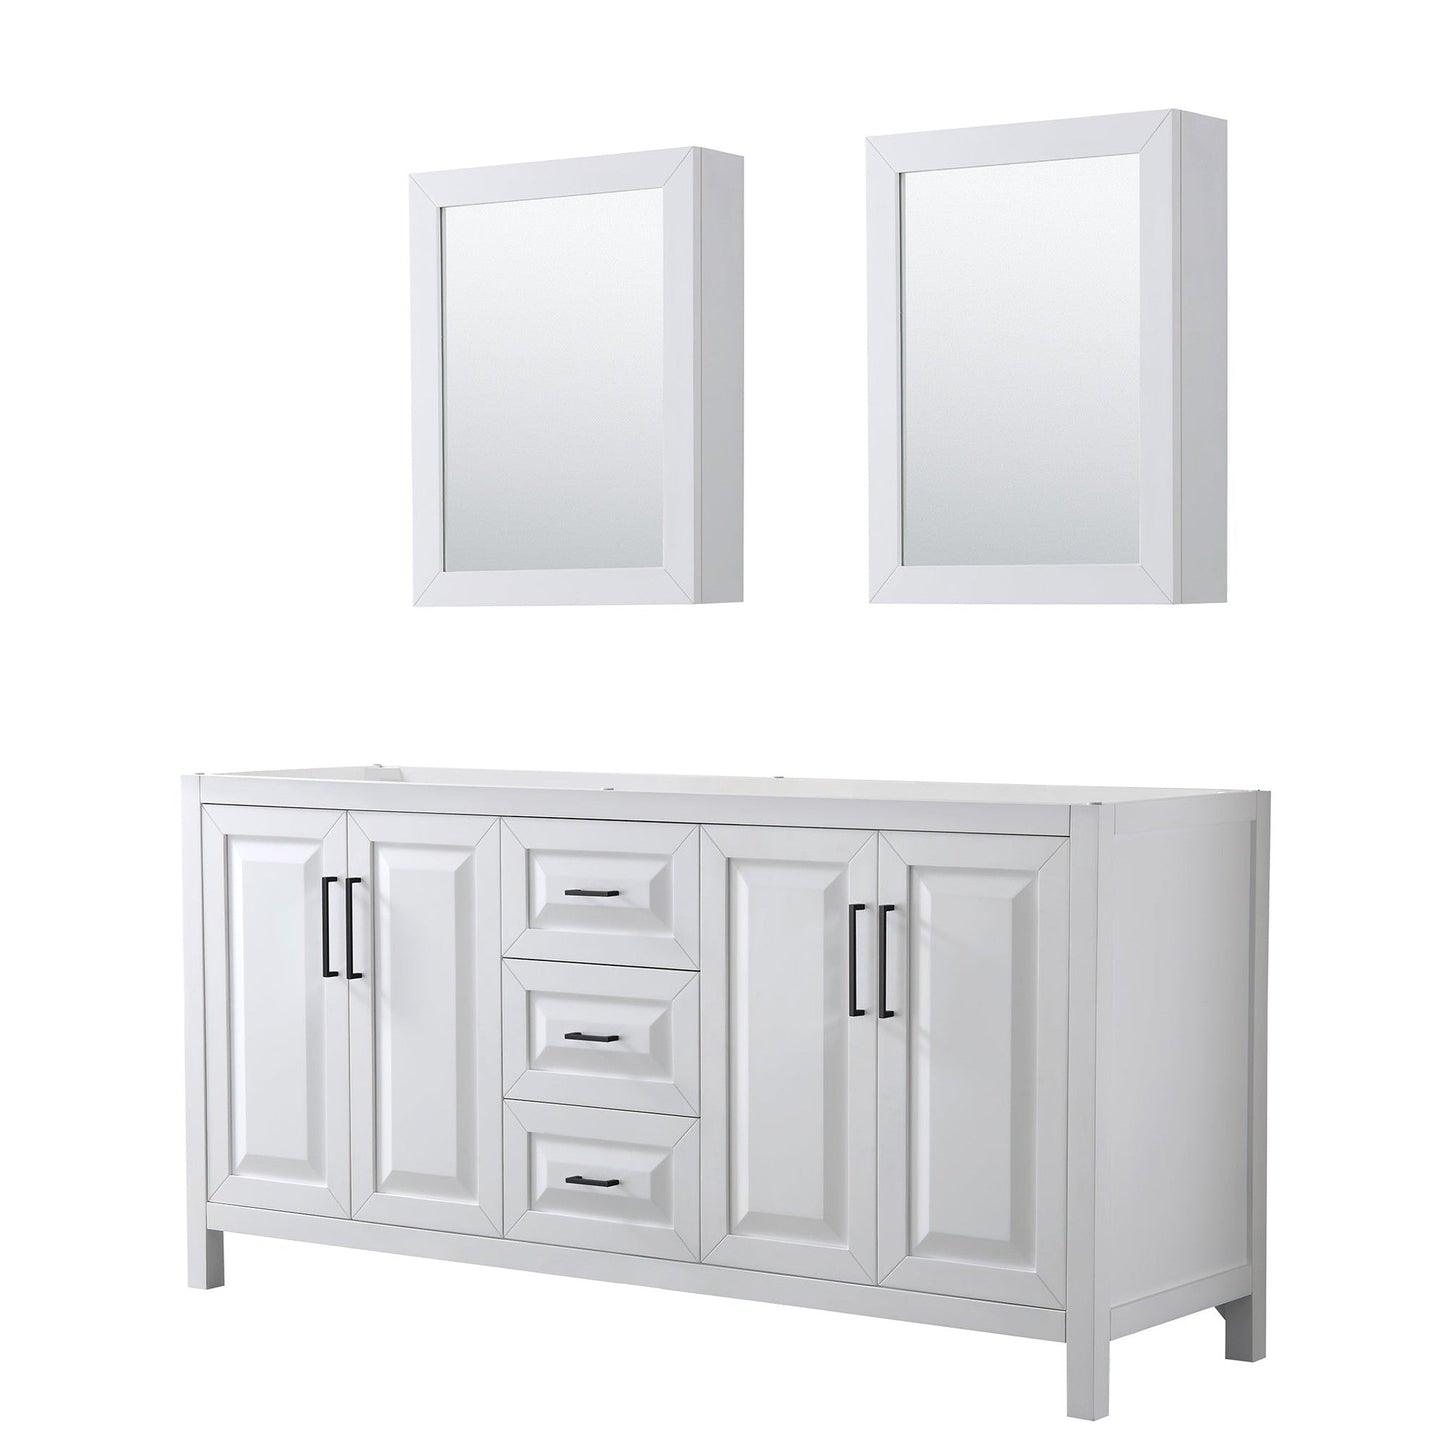 Daria 72" Double Bathroom Vanity in White, No Countertop, No Sink, Matte Black Trim, Medicine Cabinets